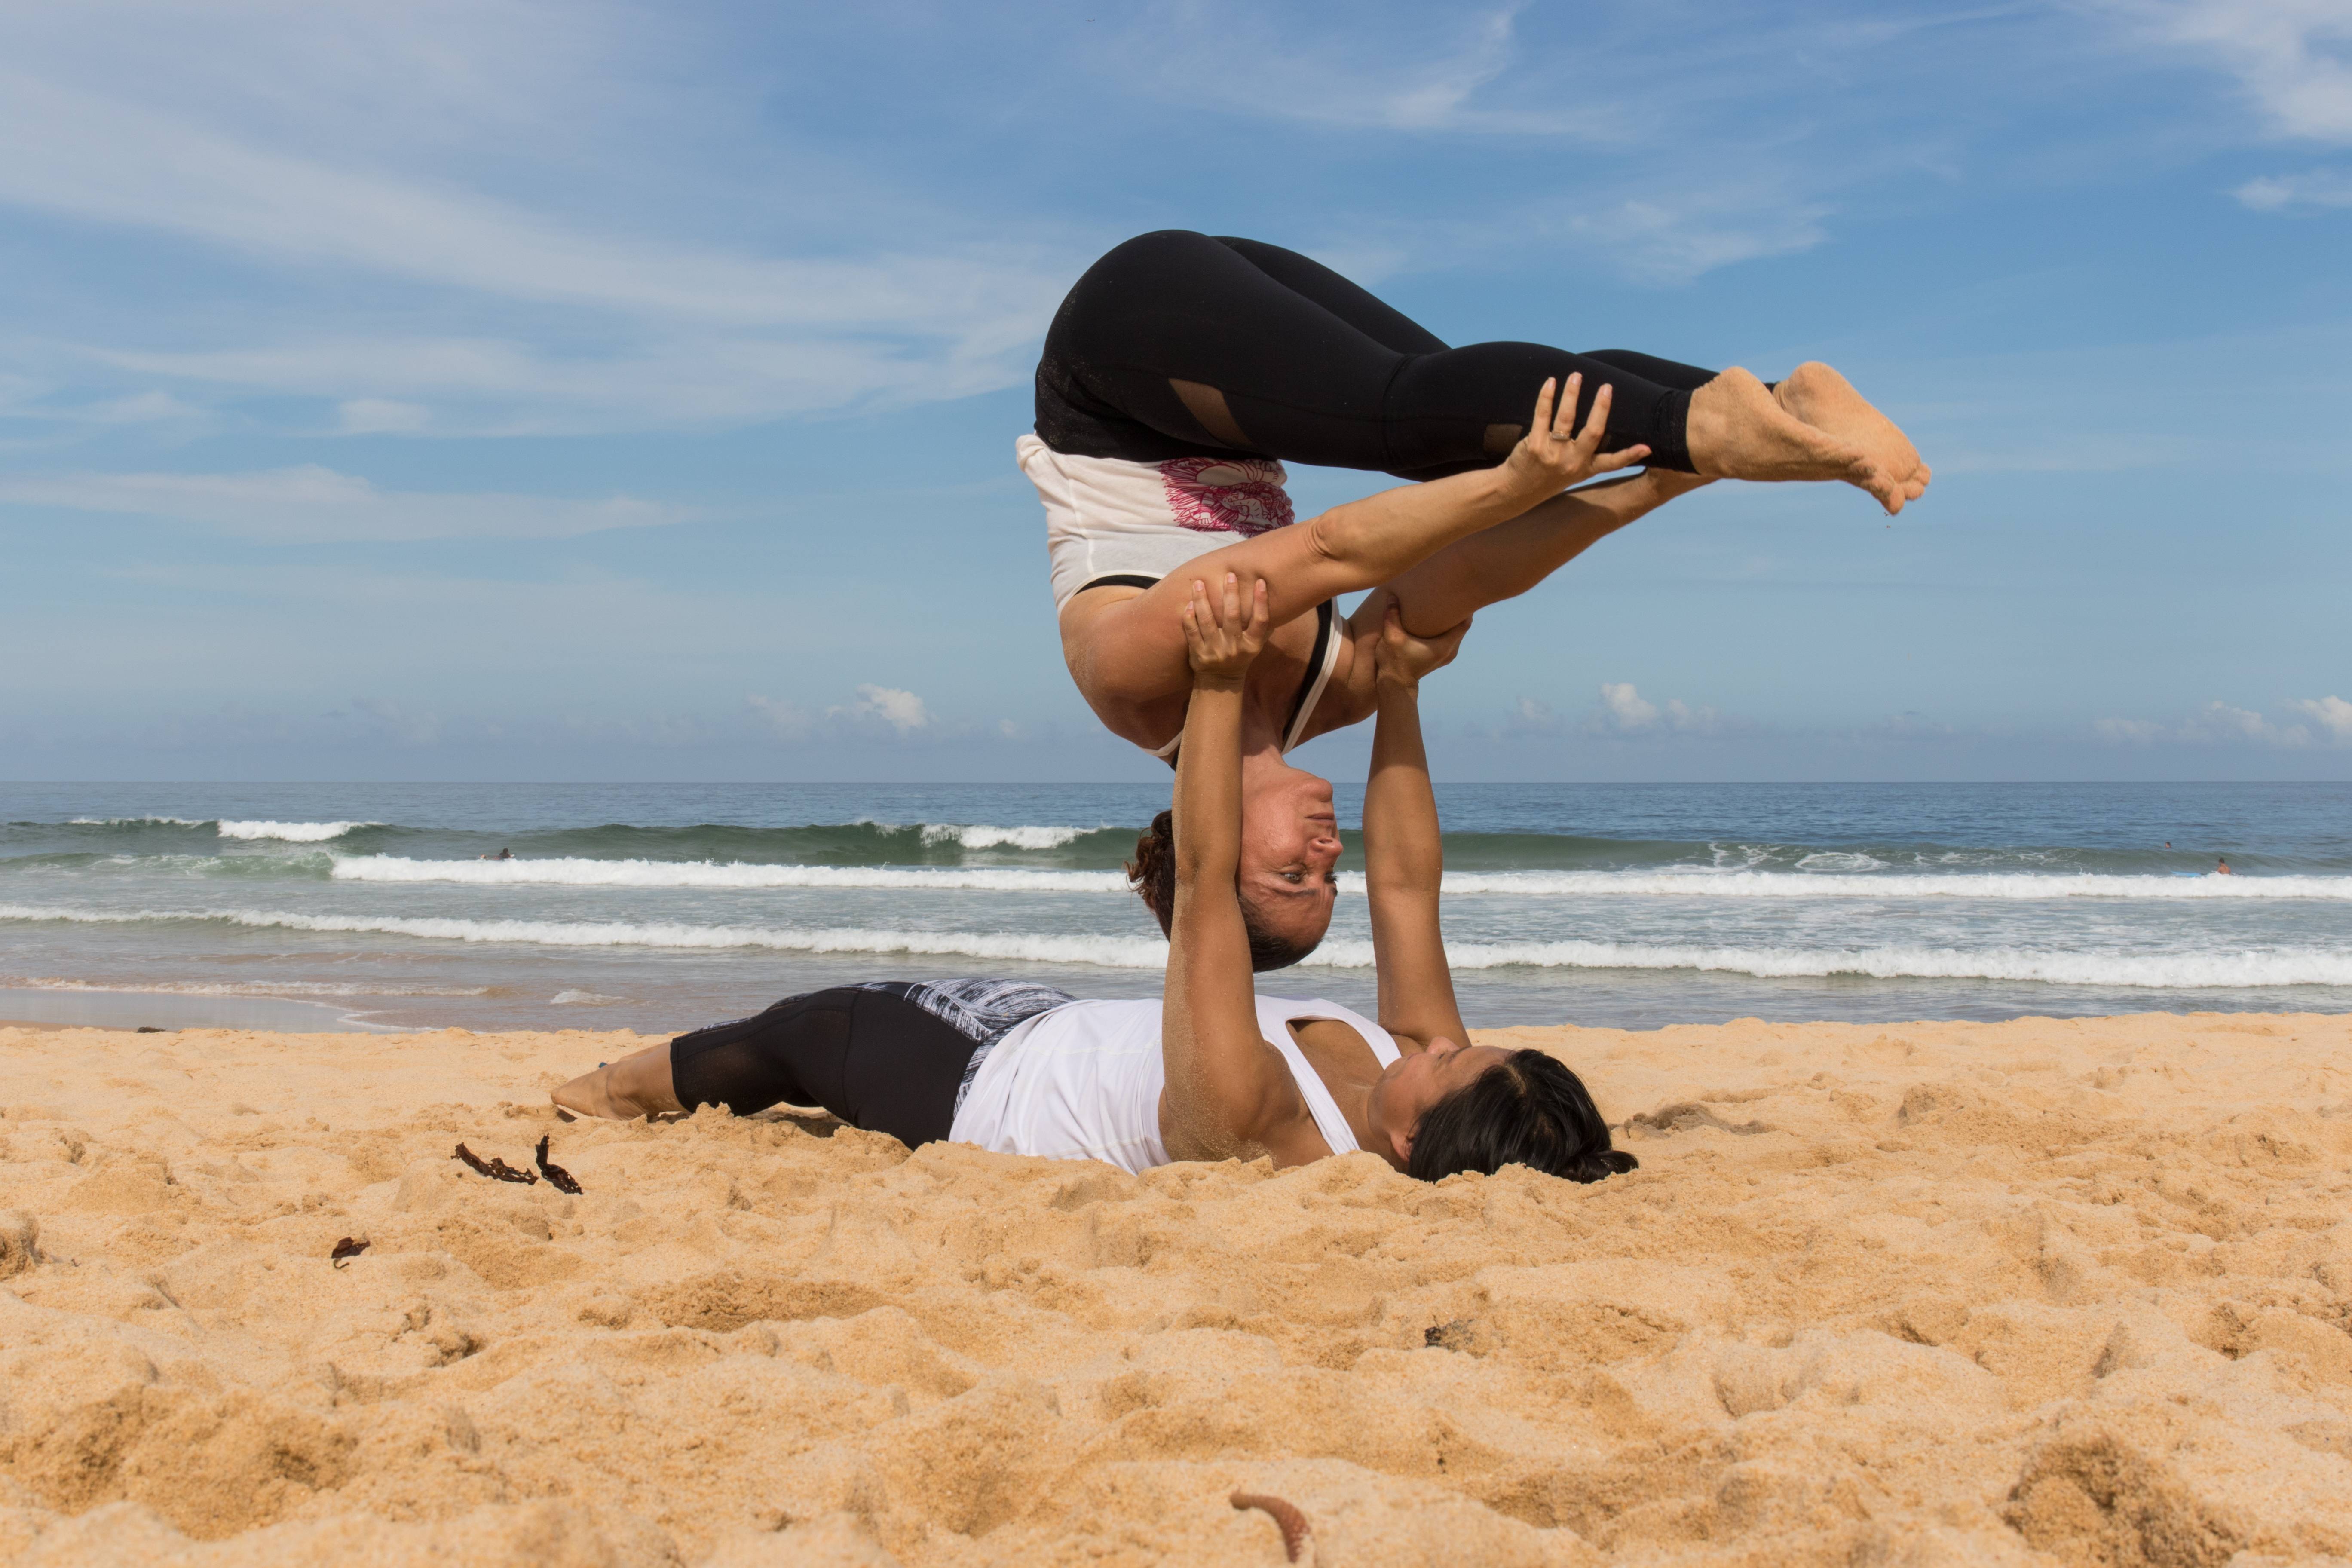 Упражнения йоги для двоих